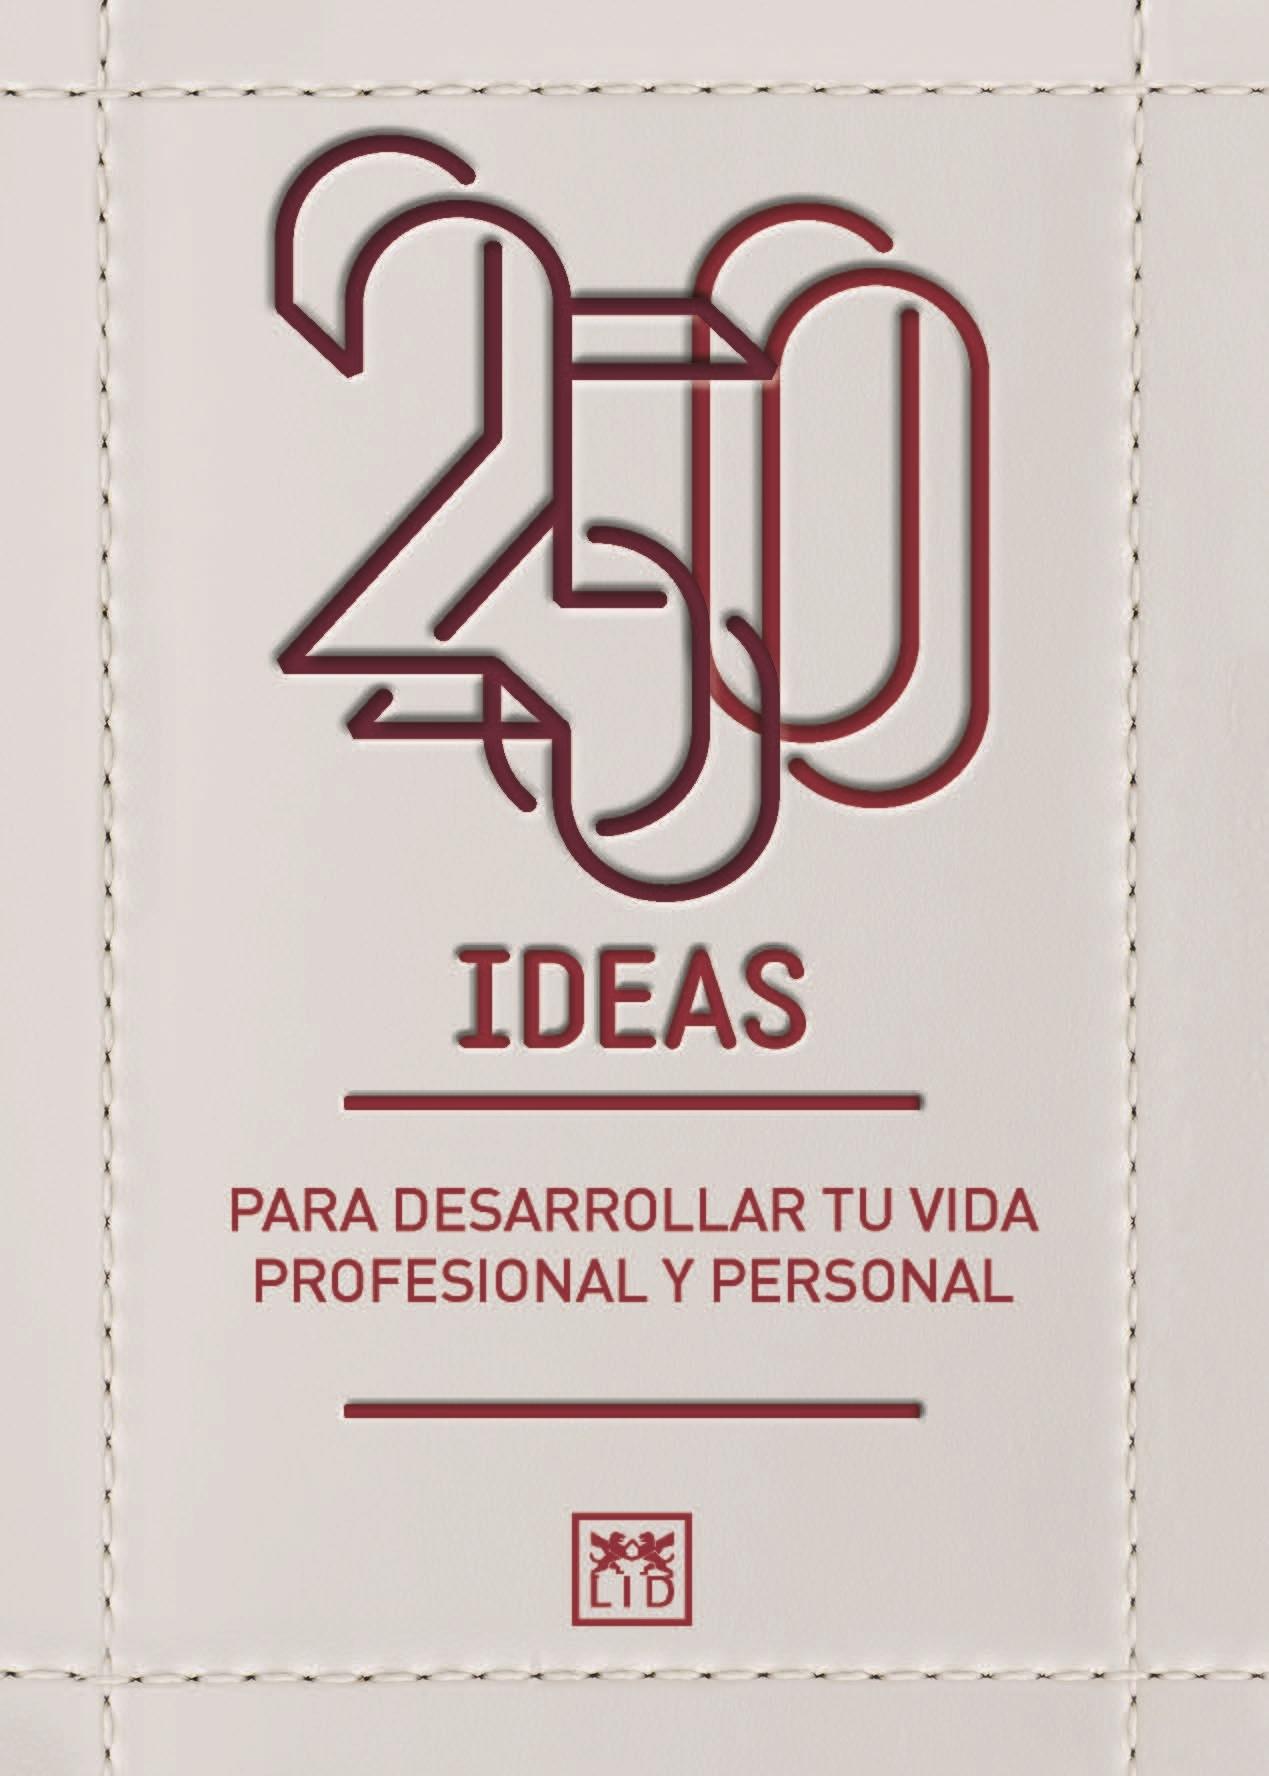 250 ideas  "Para desarrollar tu vida profesional y personal"